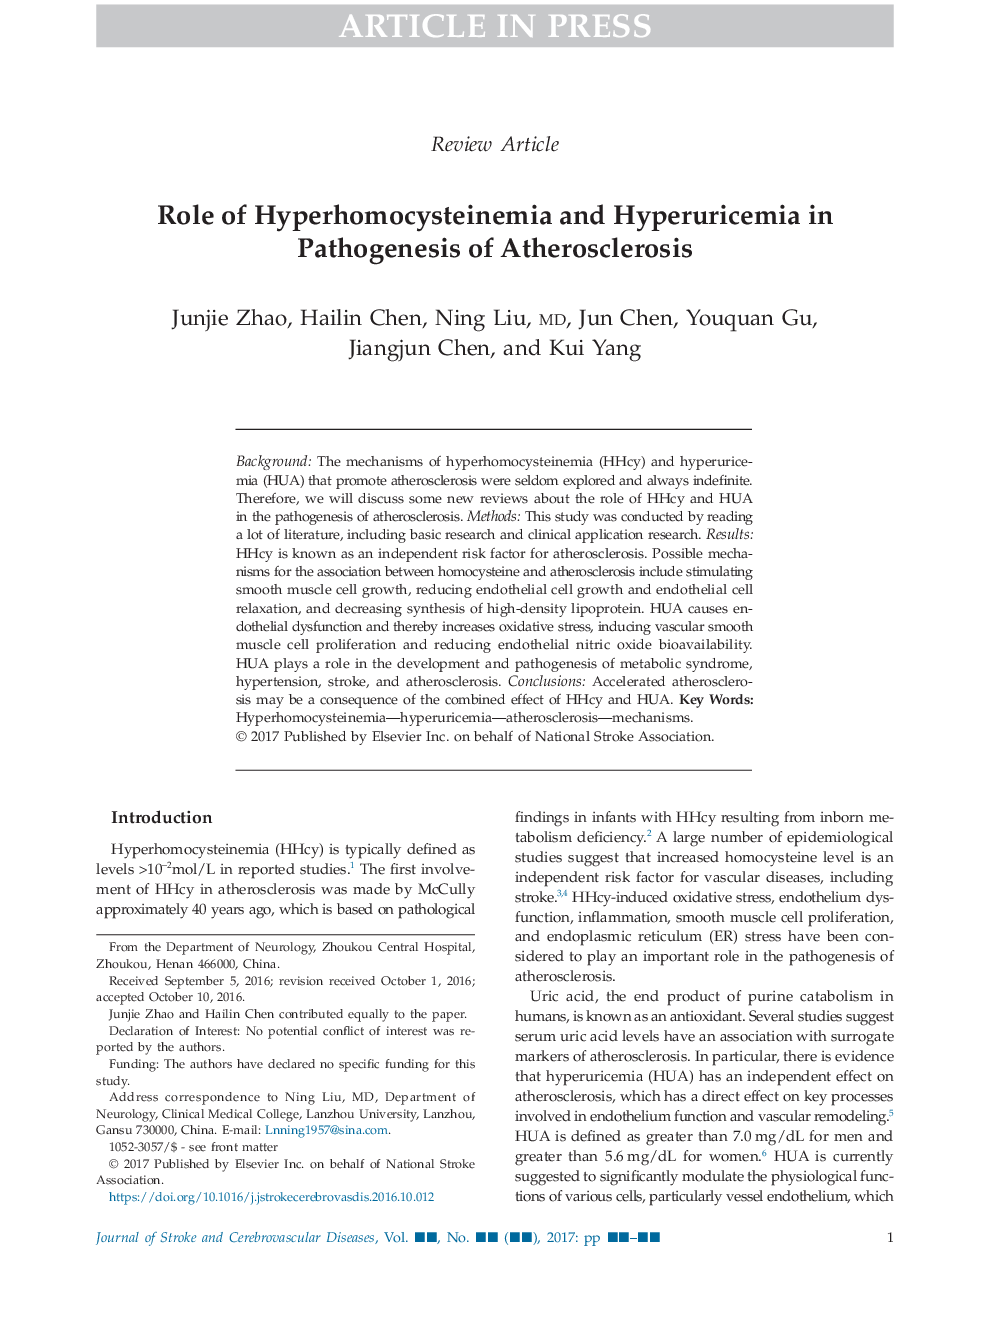 نقش هیپر هوموسیتینمی و هیپوآریسمی در پاتوژنز آترواسکلروز 